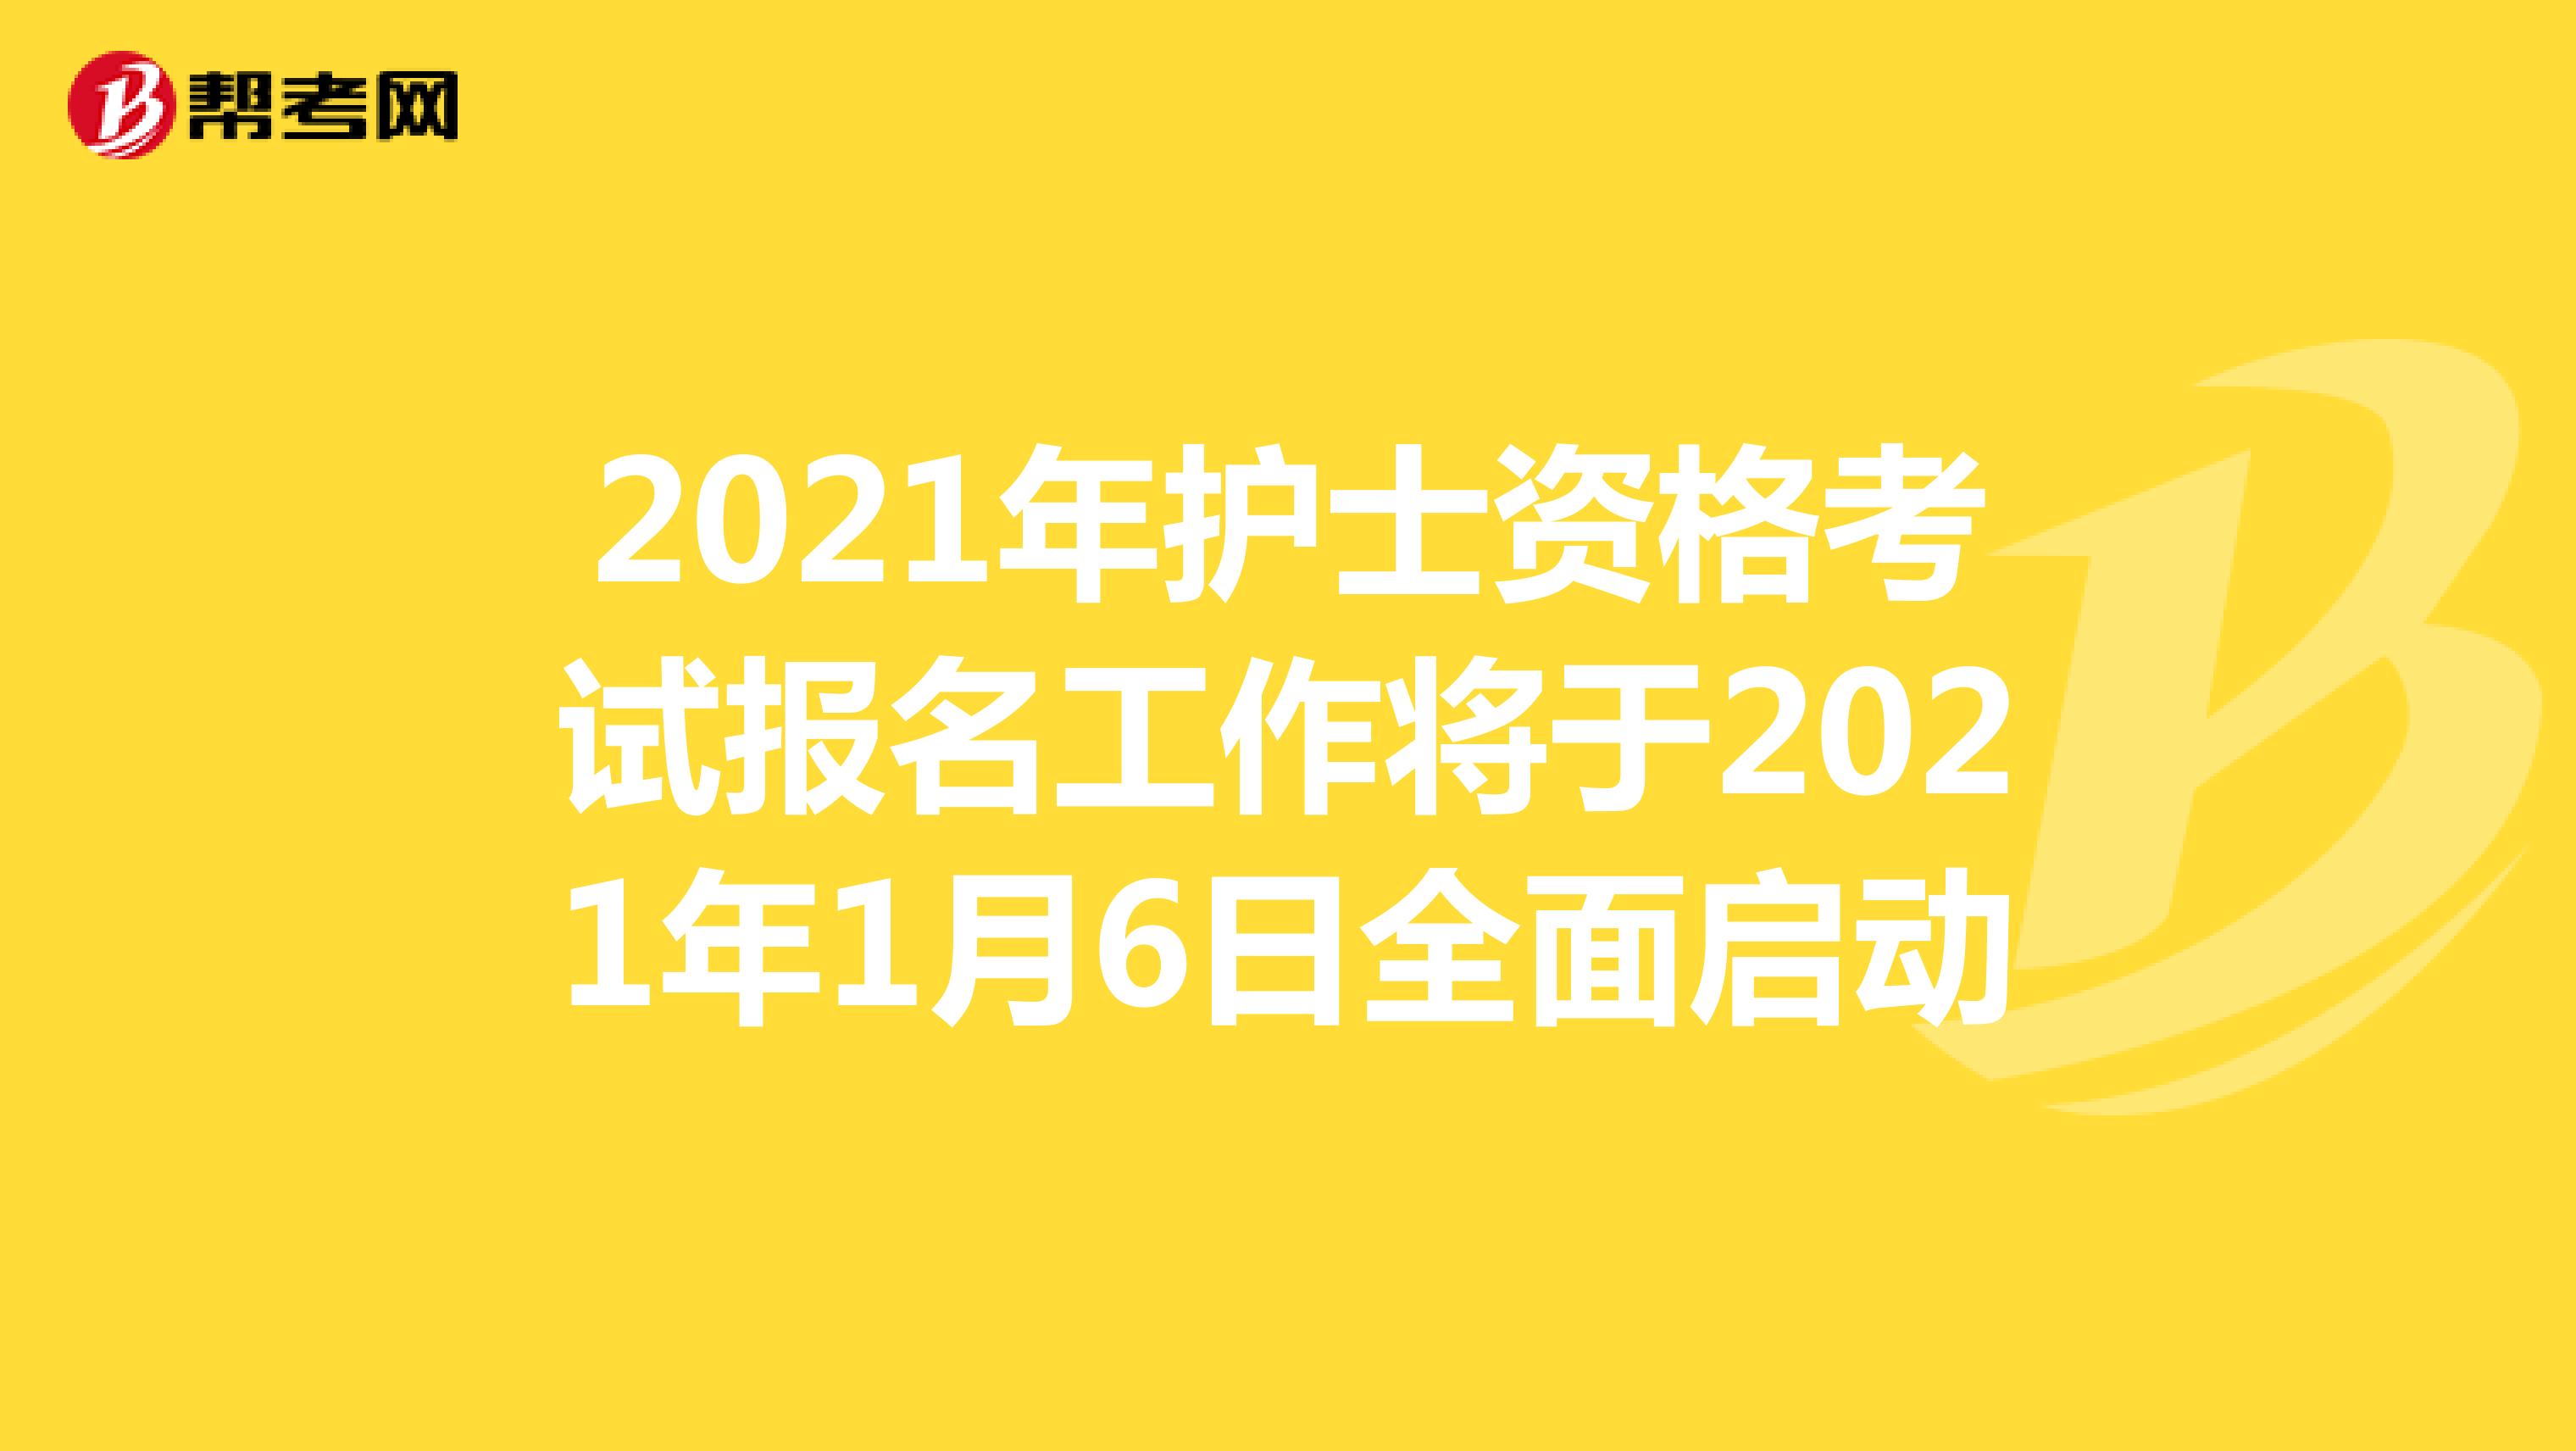 2021年护士资格考试报名工作将于2021年1月6日全面启动